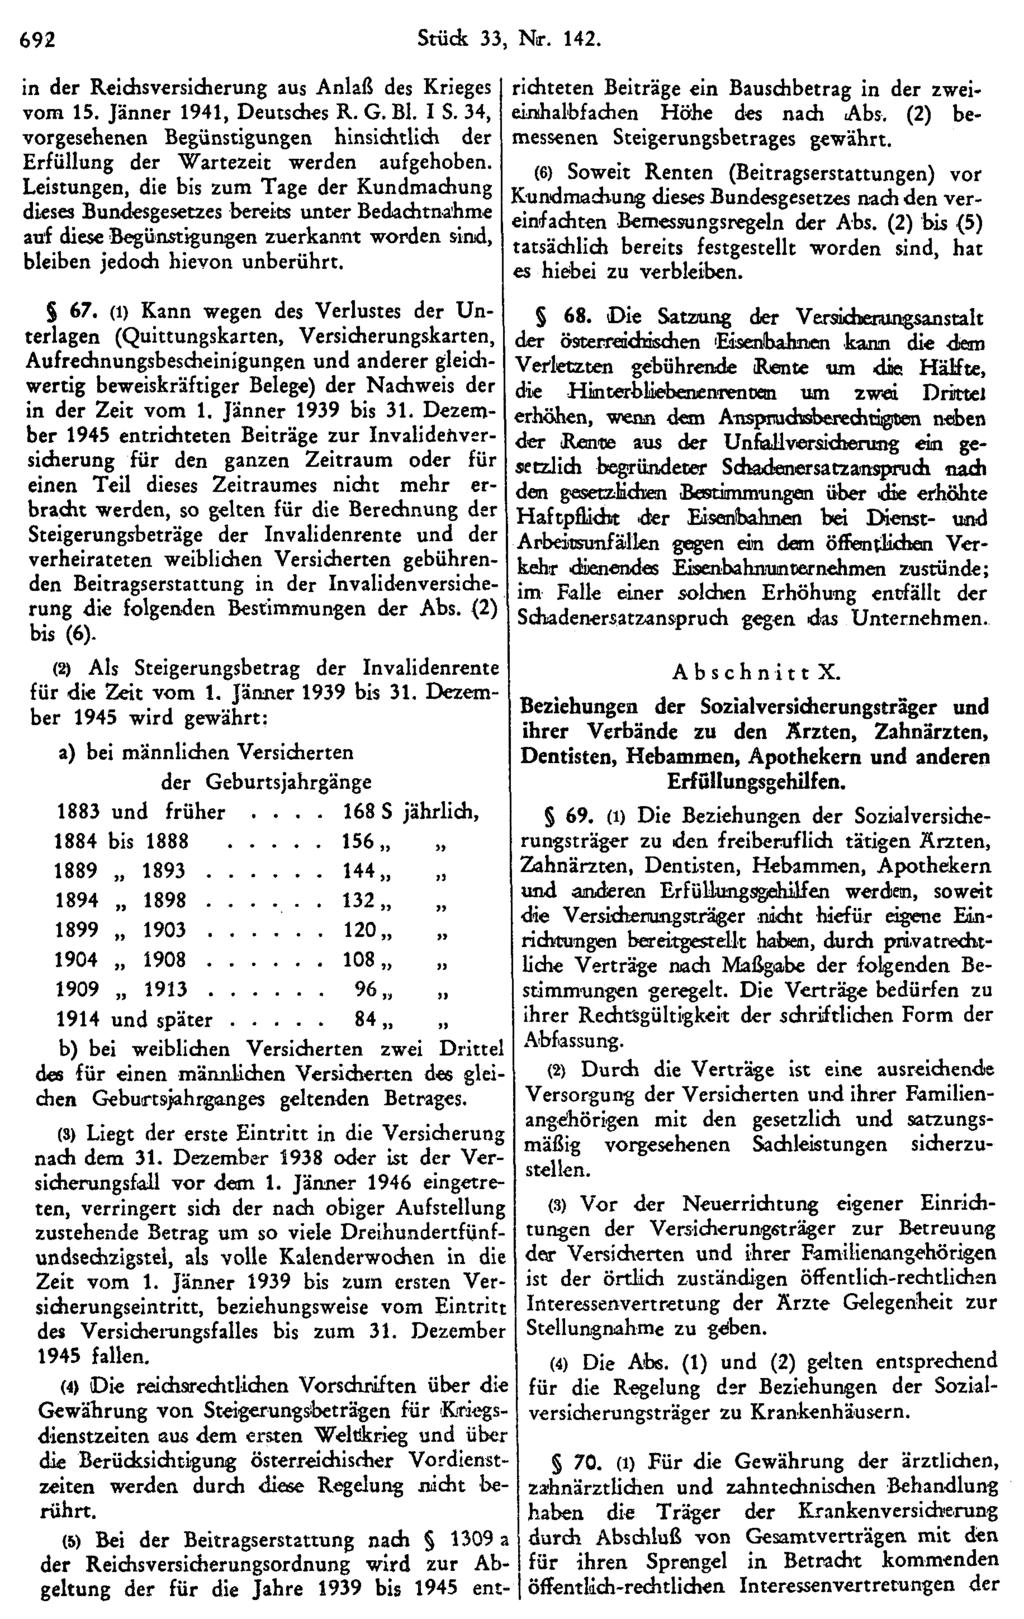 692 Stück 33, Nr. 142. in der Reichsversicherung aus Anlaß des Krieges vom 15. Jänner 1941, Deutsches R. G. Bl. I S.